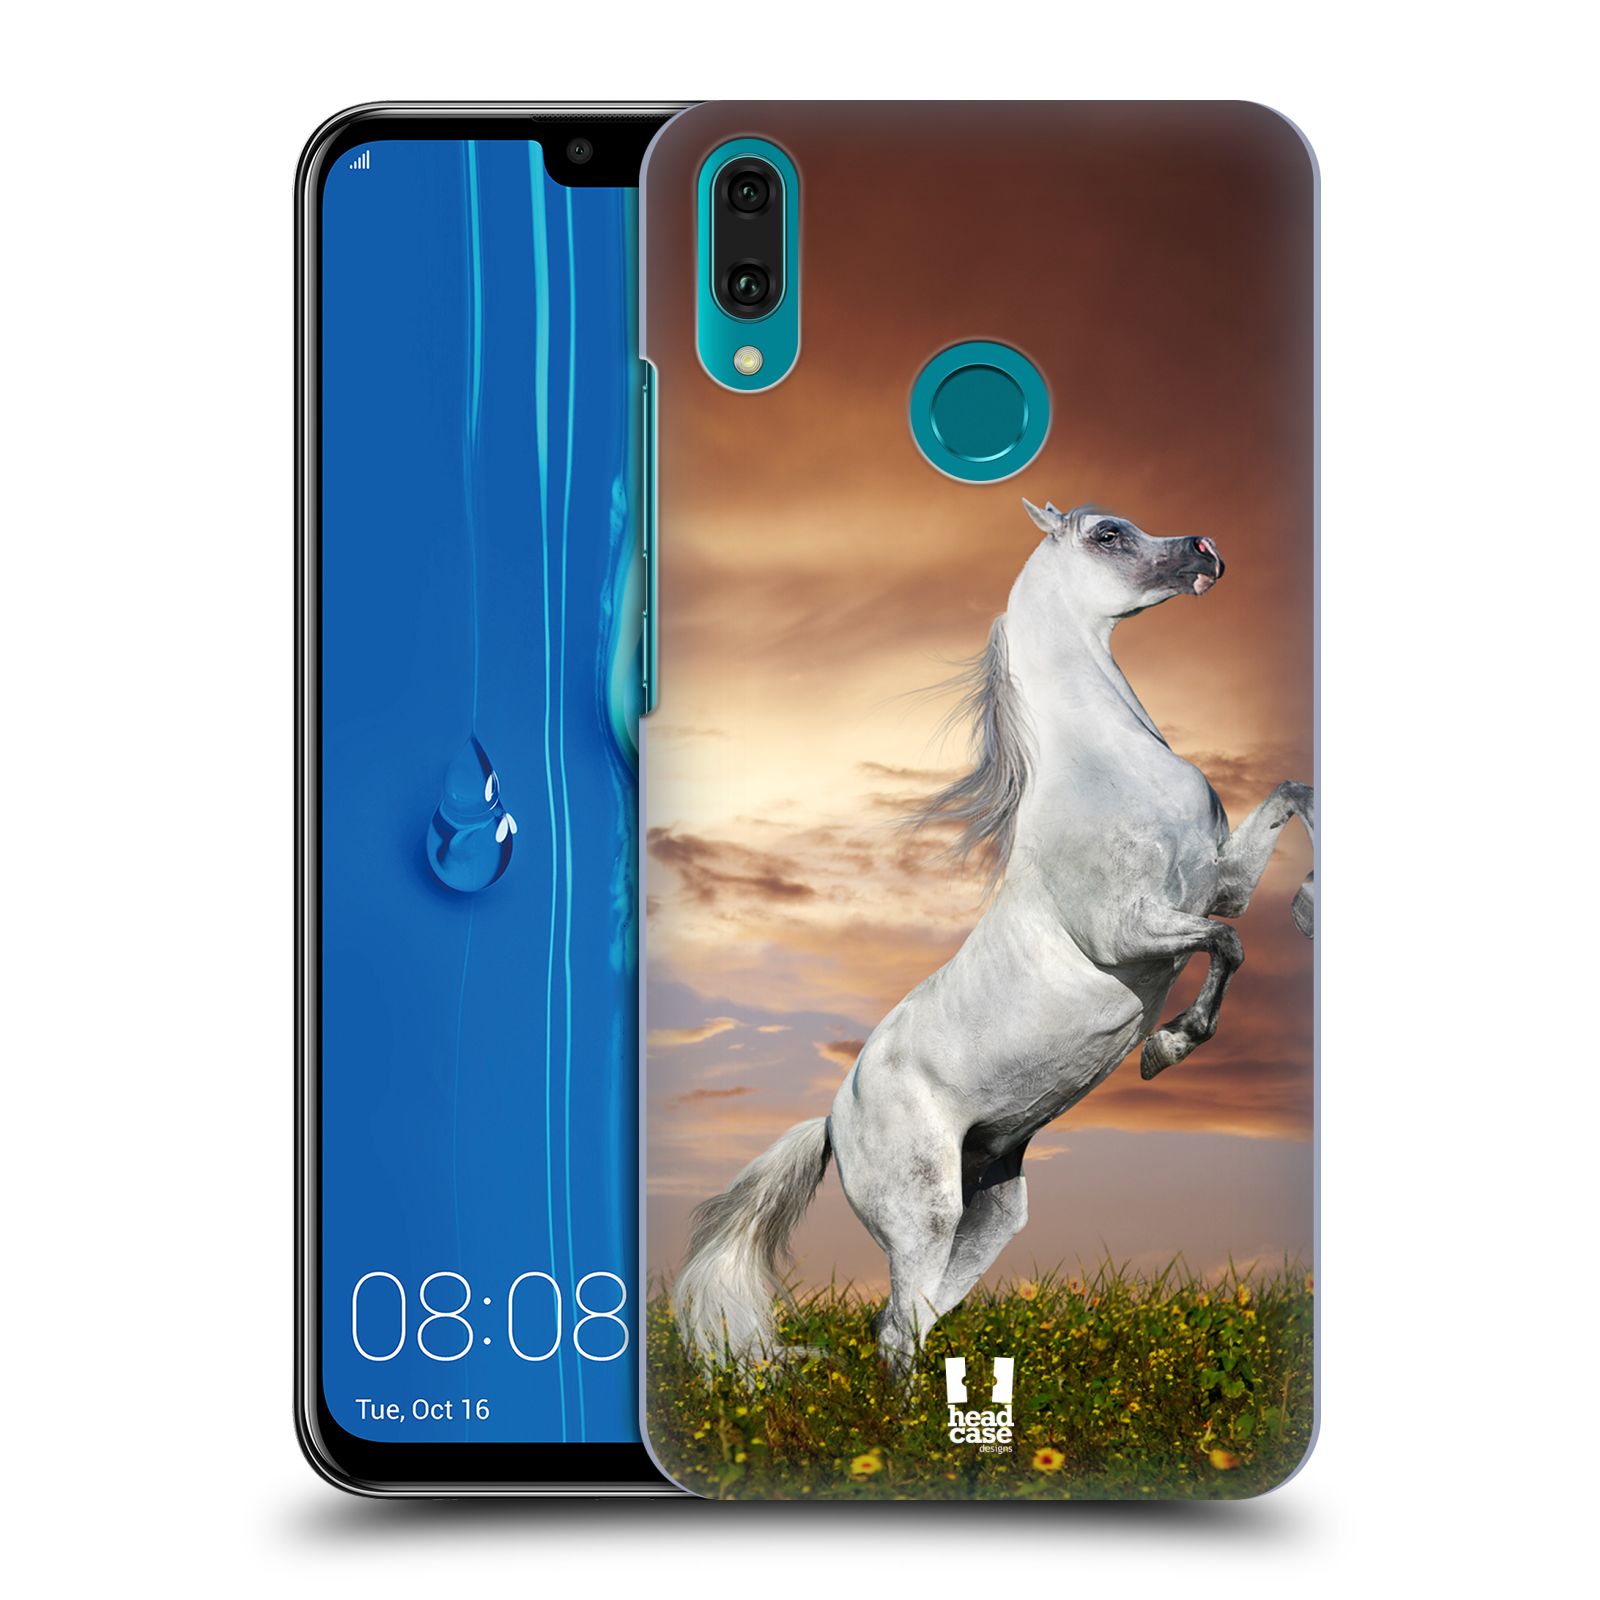 Pouzdro na mobil Huawei Y9 2019 - HEAD CASE - vzor Divočina, Divoký život a zvířata foto DIVOKÝ KŮŇ MUSTANG BÍLÁ